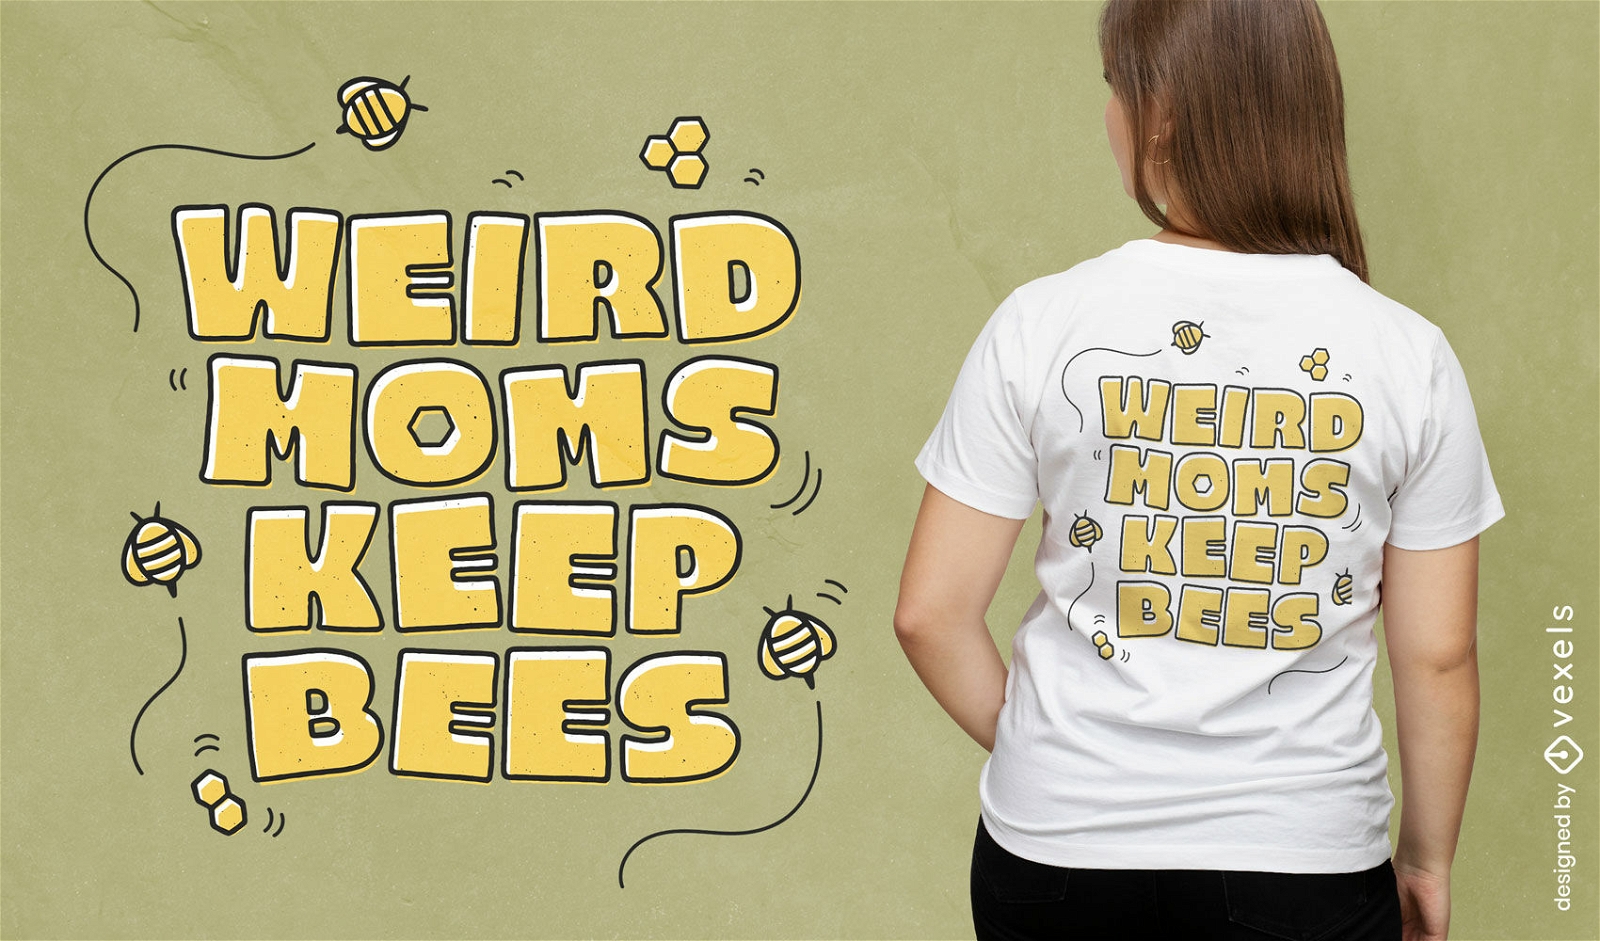 Weird moms keep bees quote t-shirt design